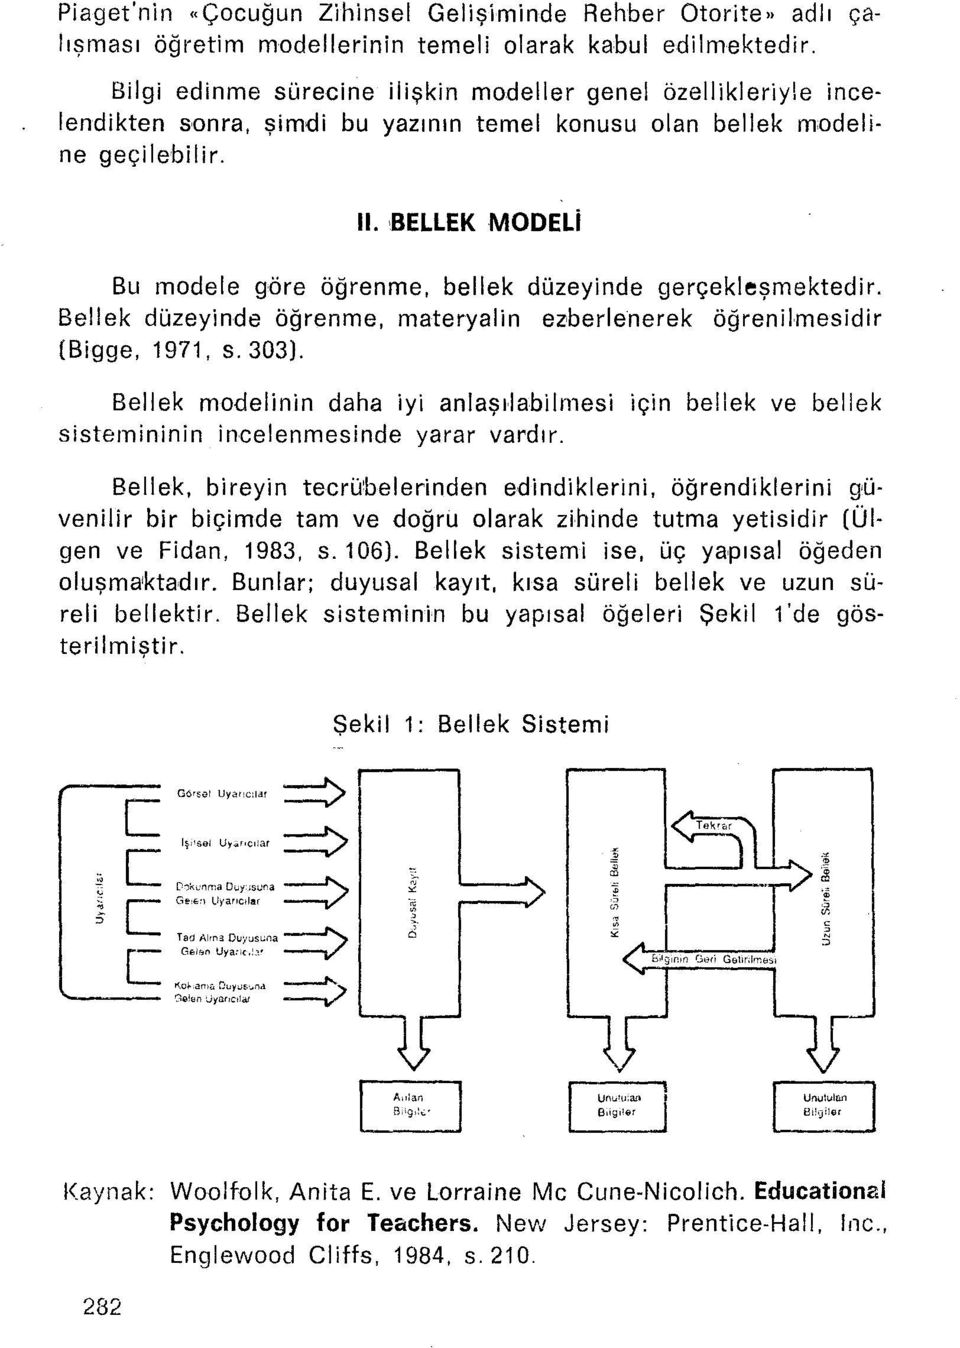 ,bellek MODELi Bu modele göre öğrenme, bellek düzeyinde gerçekleşmektedir. Bellek düzeyinde öğrenme, materyalin ezoerlenerek öğrenilmesidir (Bigge, 1971, s.303).